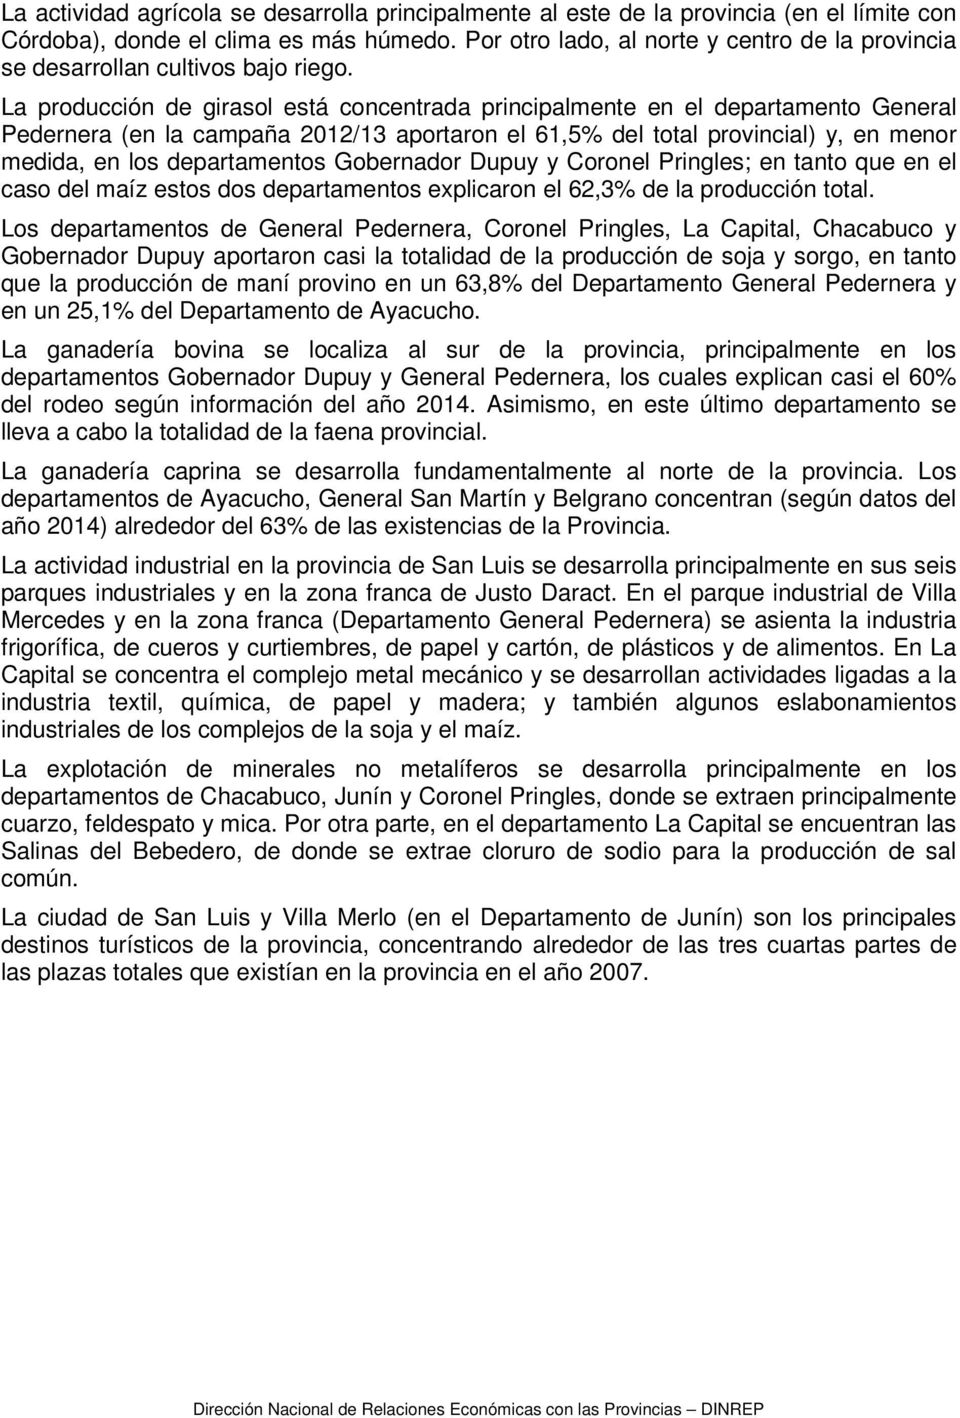 La producción de girasol está concentrada principalmente en el departamento General Pedernera (en la campaña 2012/13 aportaron el 61,5% del total provincial) y, en menor medida, en los departamentos